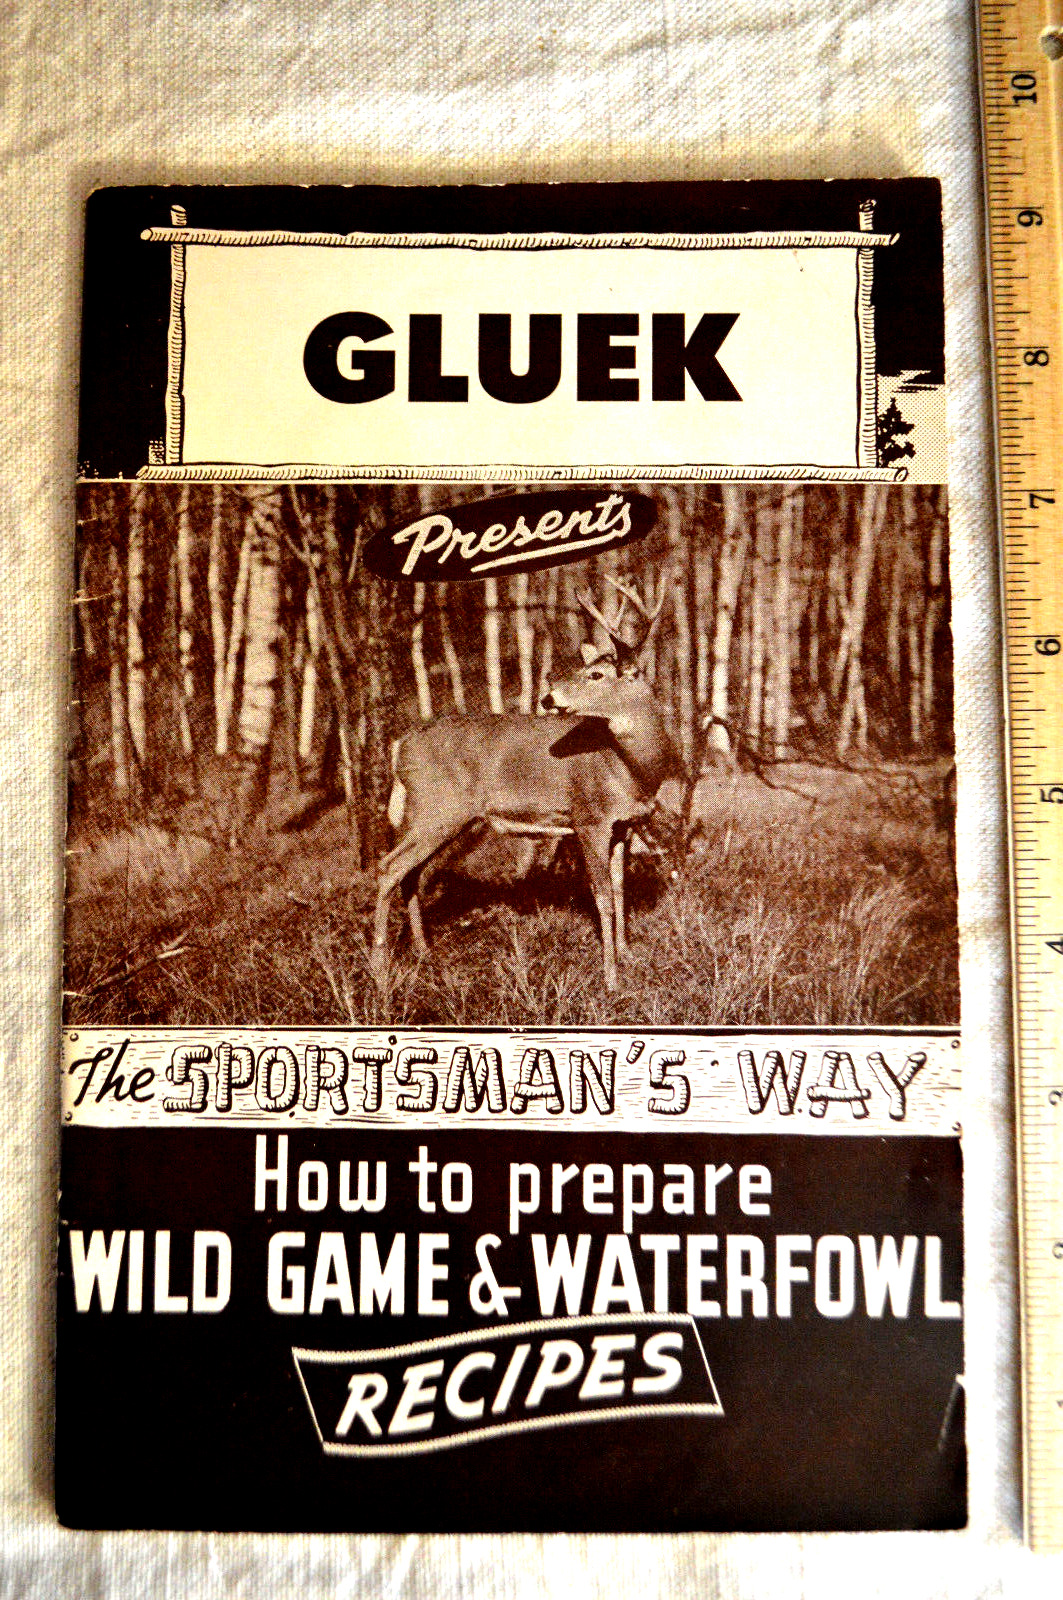 Gluek Beer Minneapolis THE SPORTSMANS WAY  game recipes booklet 1940s